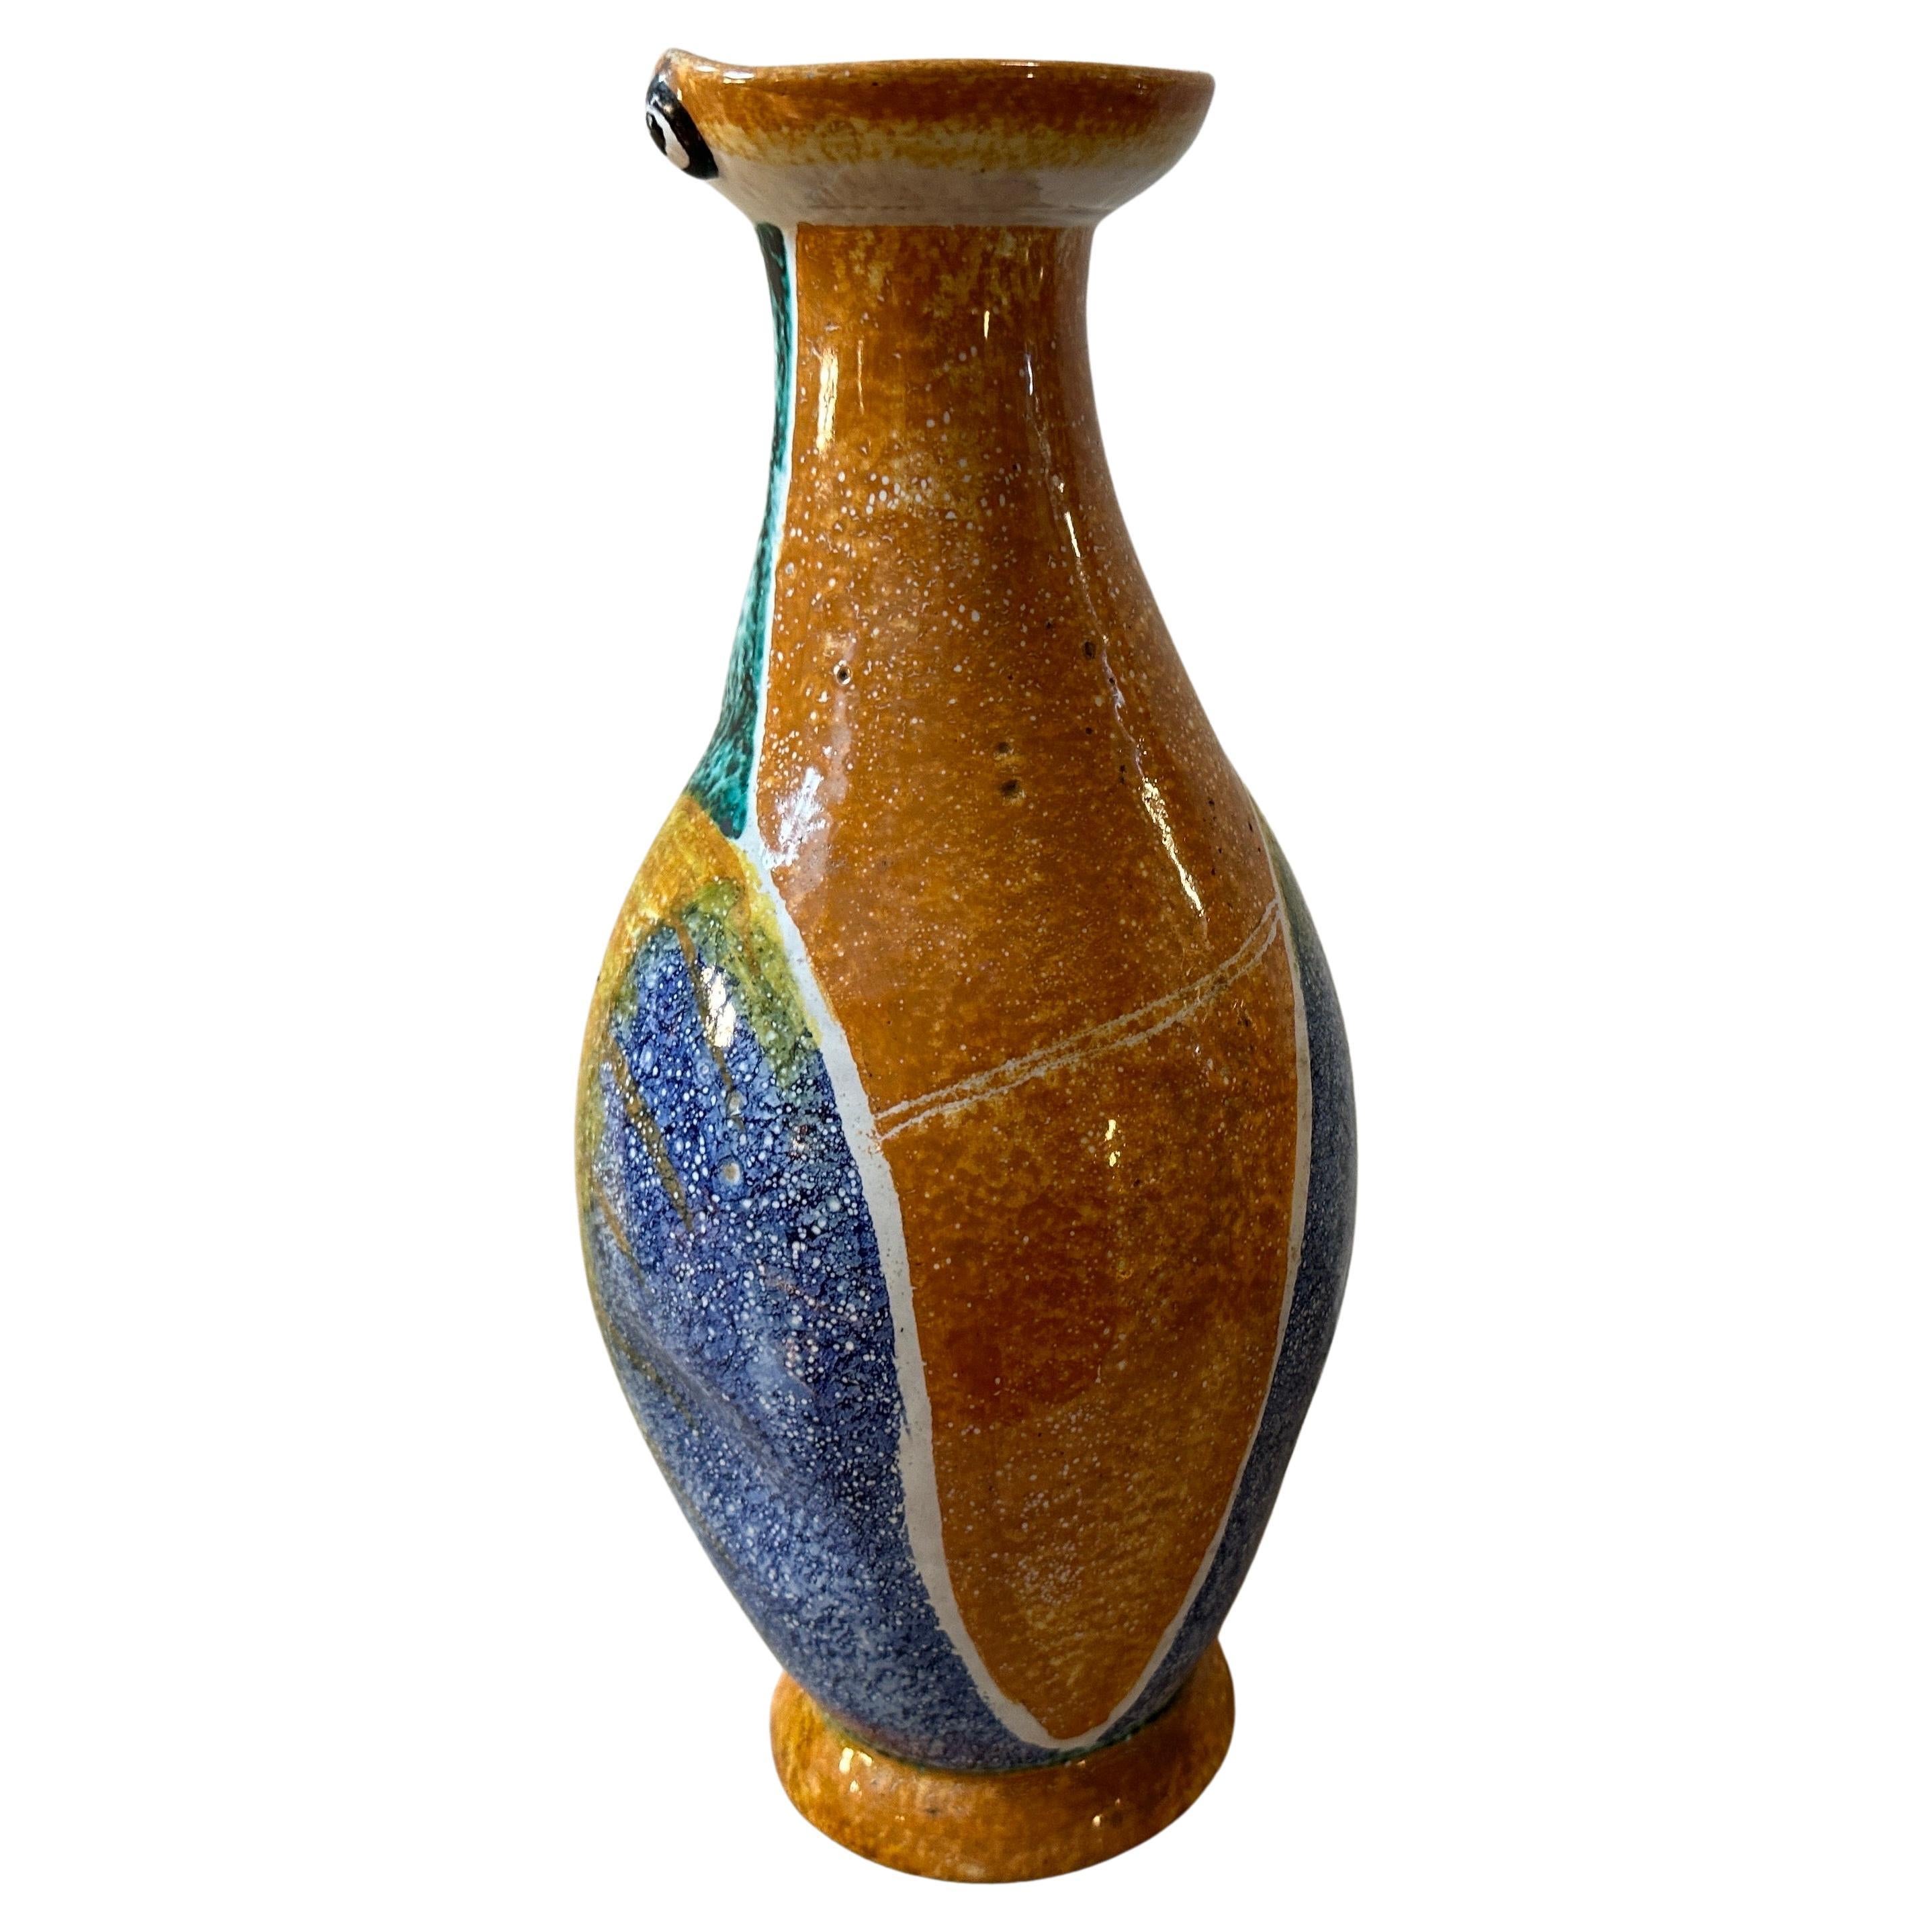 Diese Pinguinvase aus Keramik ist ein charmantes und unverwechselbares Stück, das den überschwänglichen Stil des Art Déco und die Handwerkskunst der Keramikkünstler von Albisola widerspiegelt. Die Vase ist aus Keramik gefertigt, einem vielseitigen